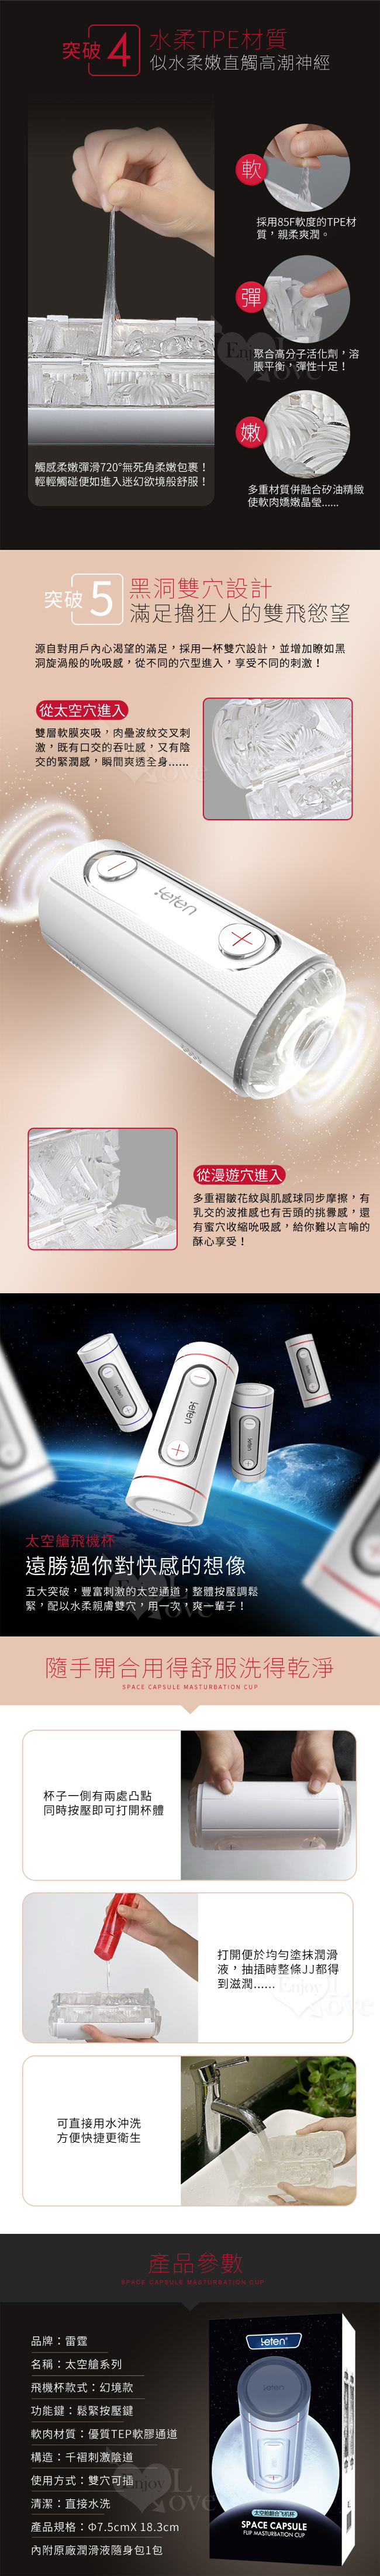 太空艙‧4D雙穴可用加壓翻合飛機杯﹝5大突破快感 - 幻境款﹞